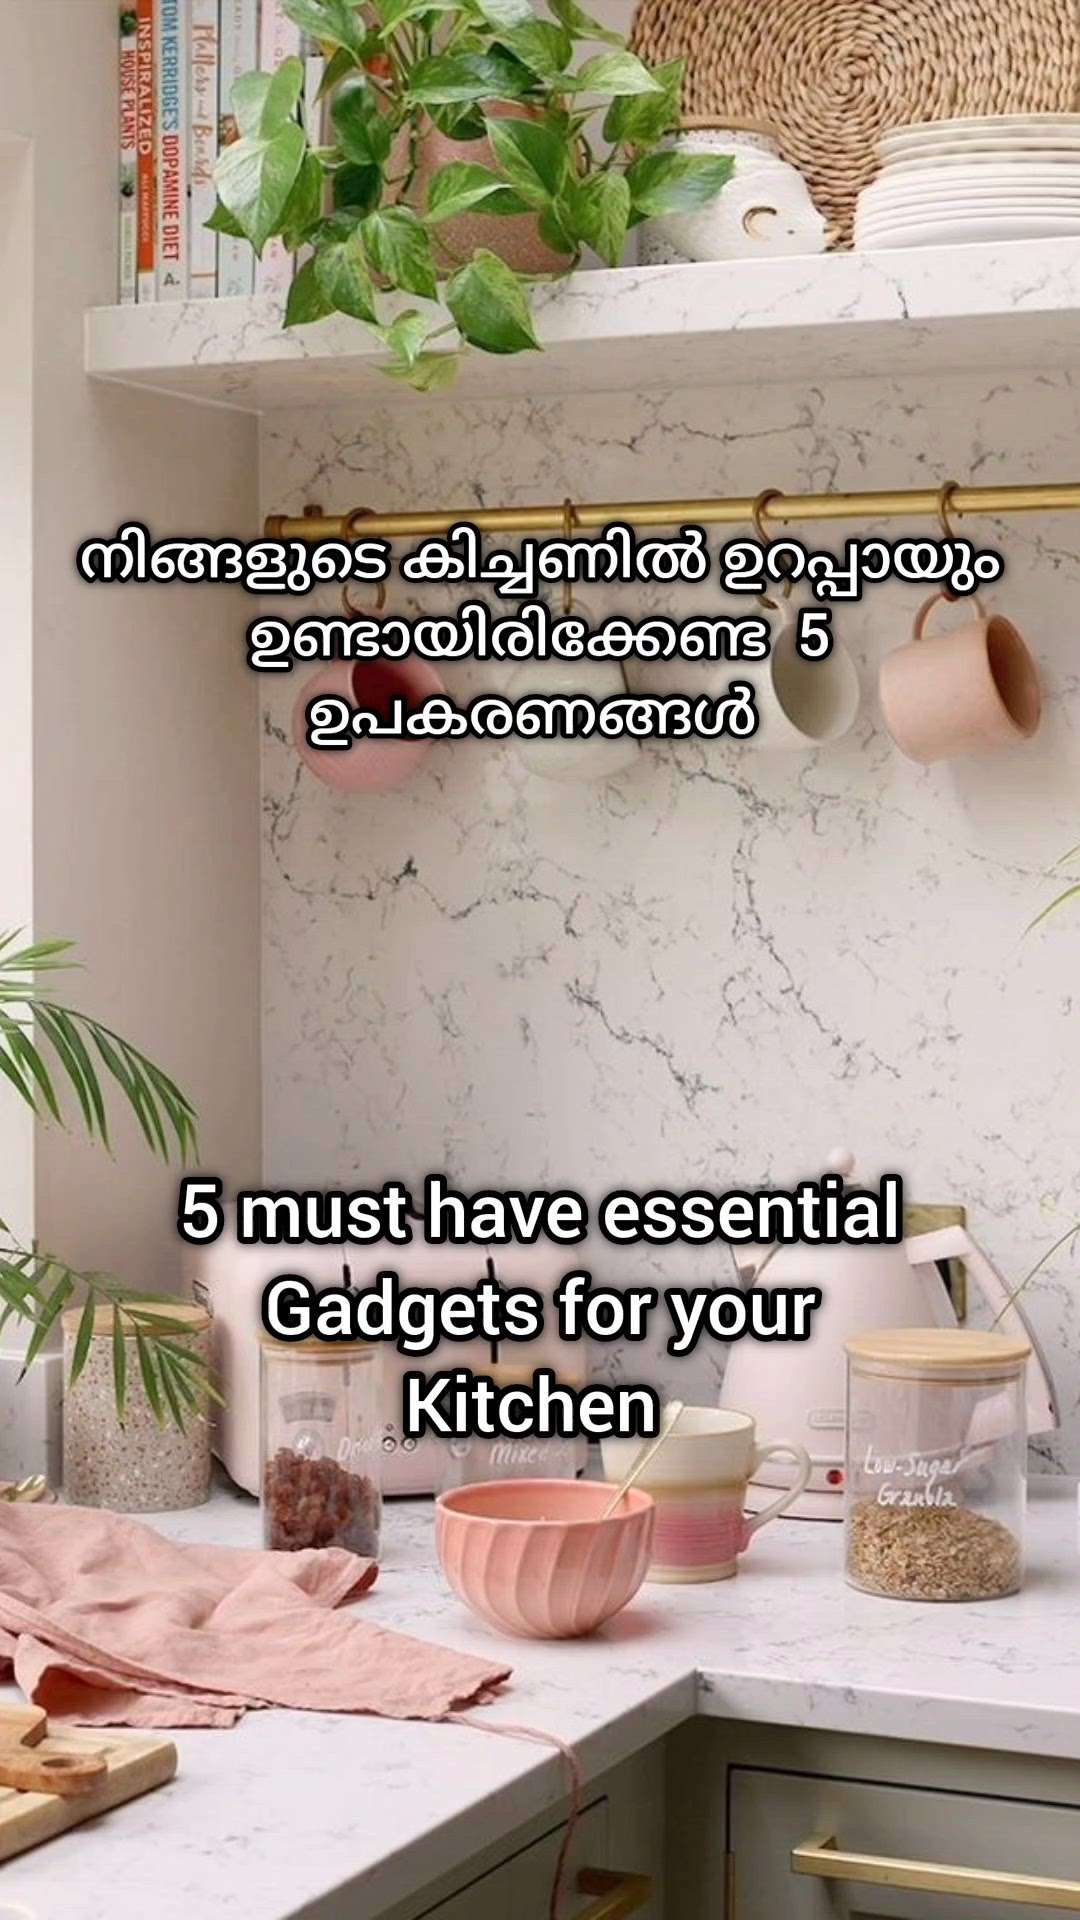 നിങ്ങളുടെ കിച്ചണിൽ ഉറപ്പായും ഉണ്ടായിരിക്കേണ്ട 5 ഉപകരണങ്ങൾ


5 must have essential tools for your kitchen

#creatorsofkolo #musthave #home #kitchenideas #modernhomes #ideas #essentials